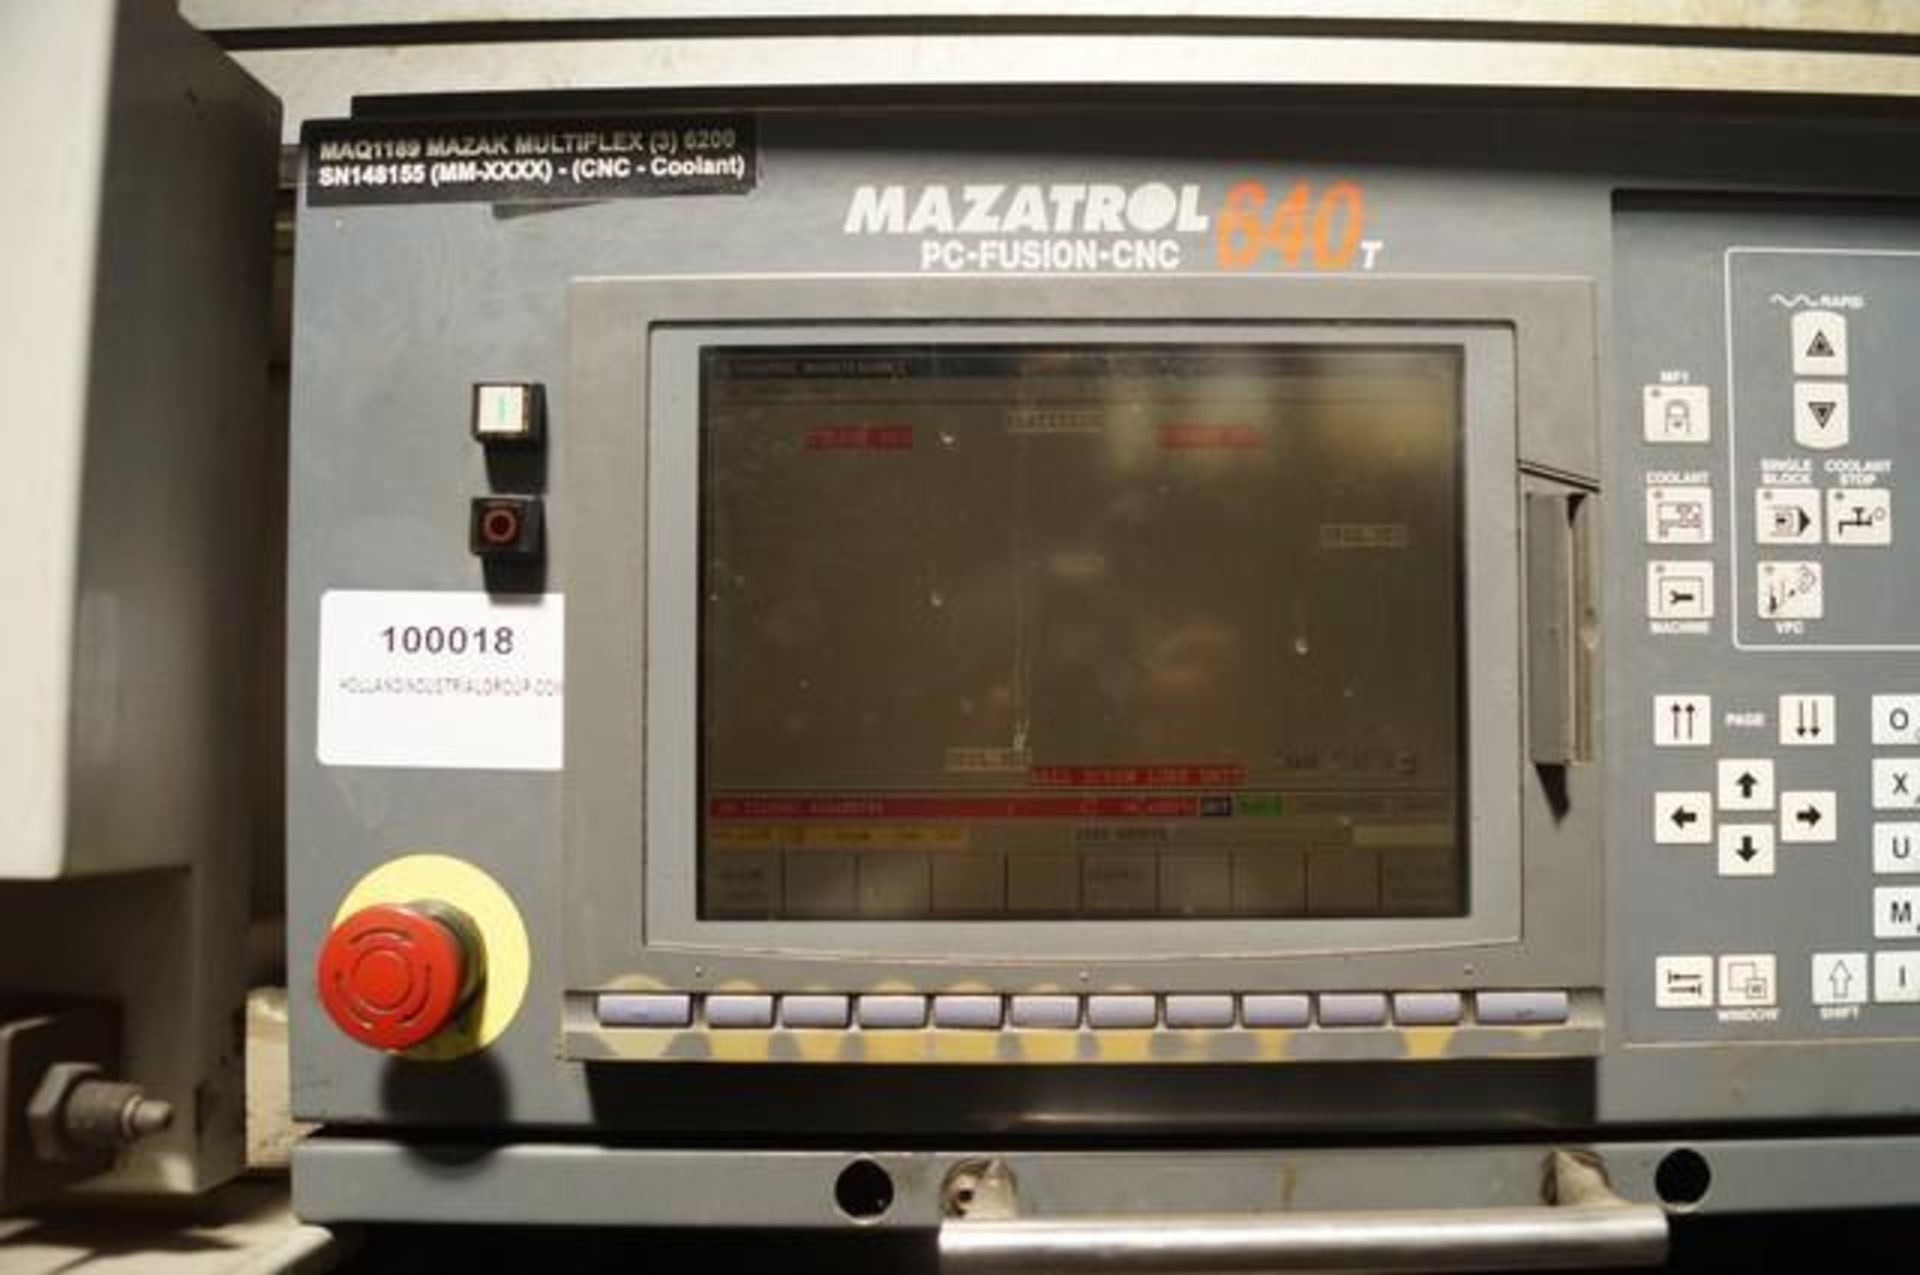 2000 MAZAK MULTIPLEX 6200 Horizontal Turning Center - Image 6 of 8